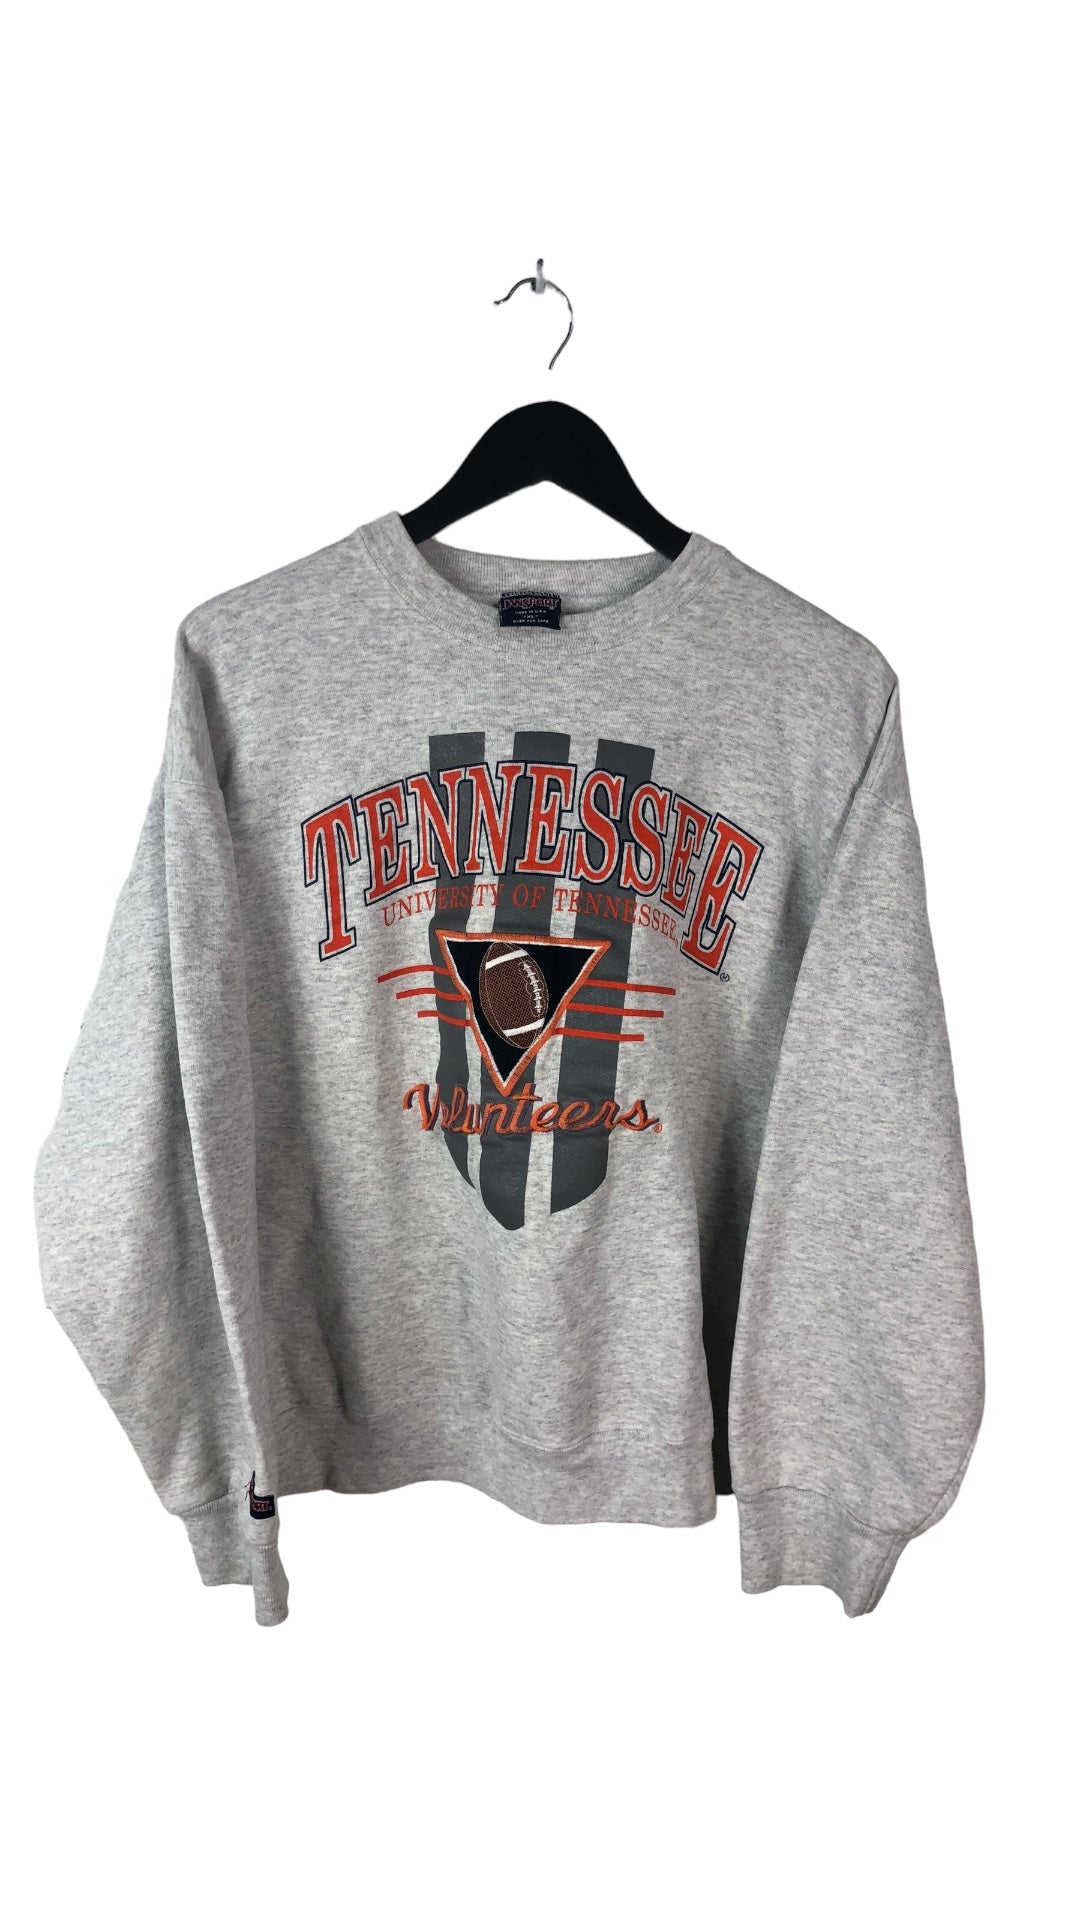 VTG UT Vols Jansport Crewneck Sweater Sz XL